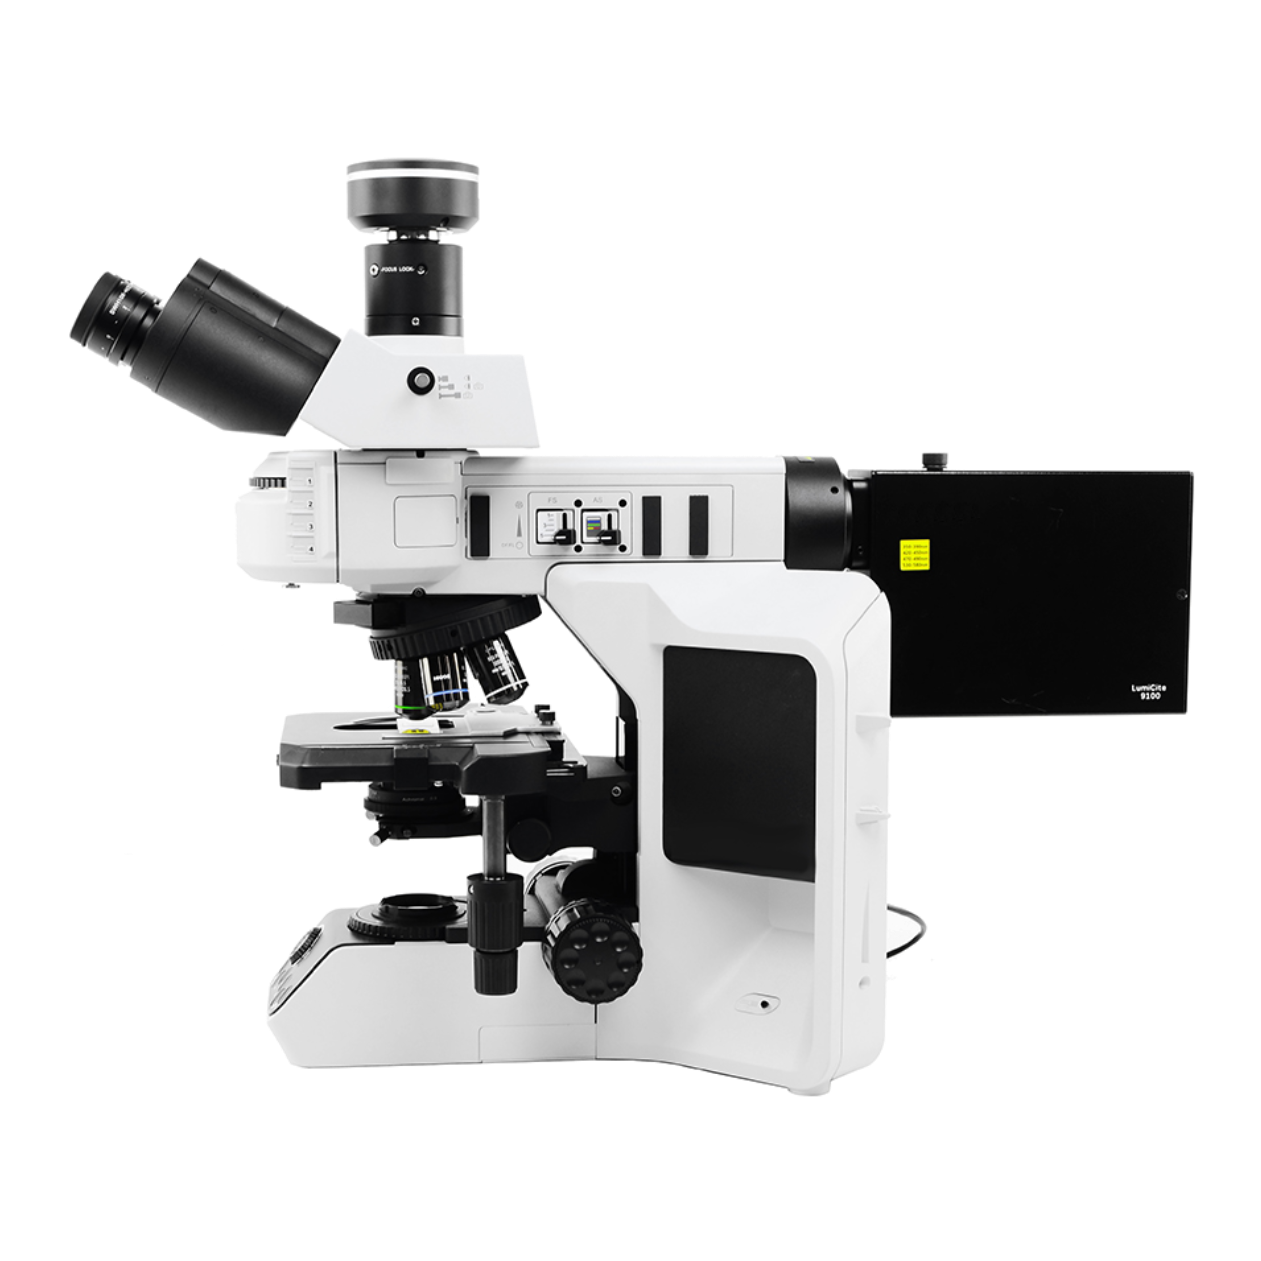 贝拓科学BETOP研究型荧光显微镜TX53F